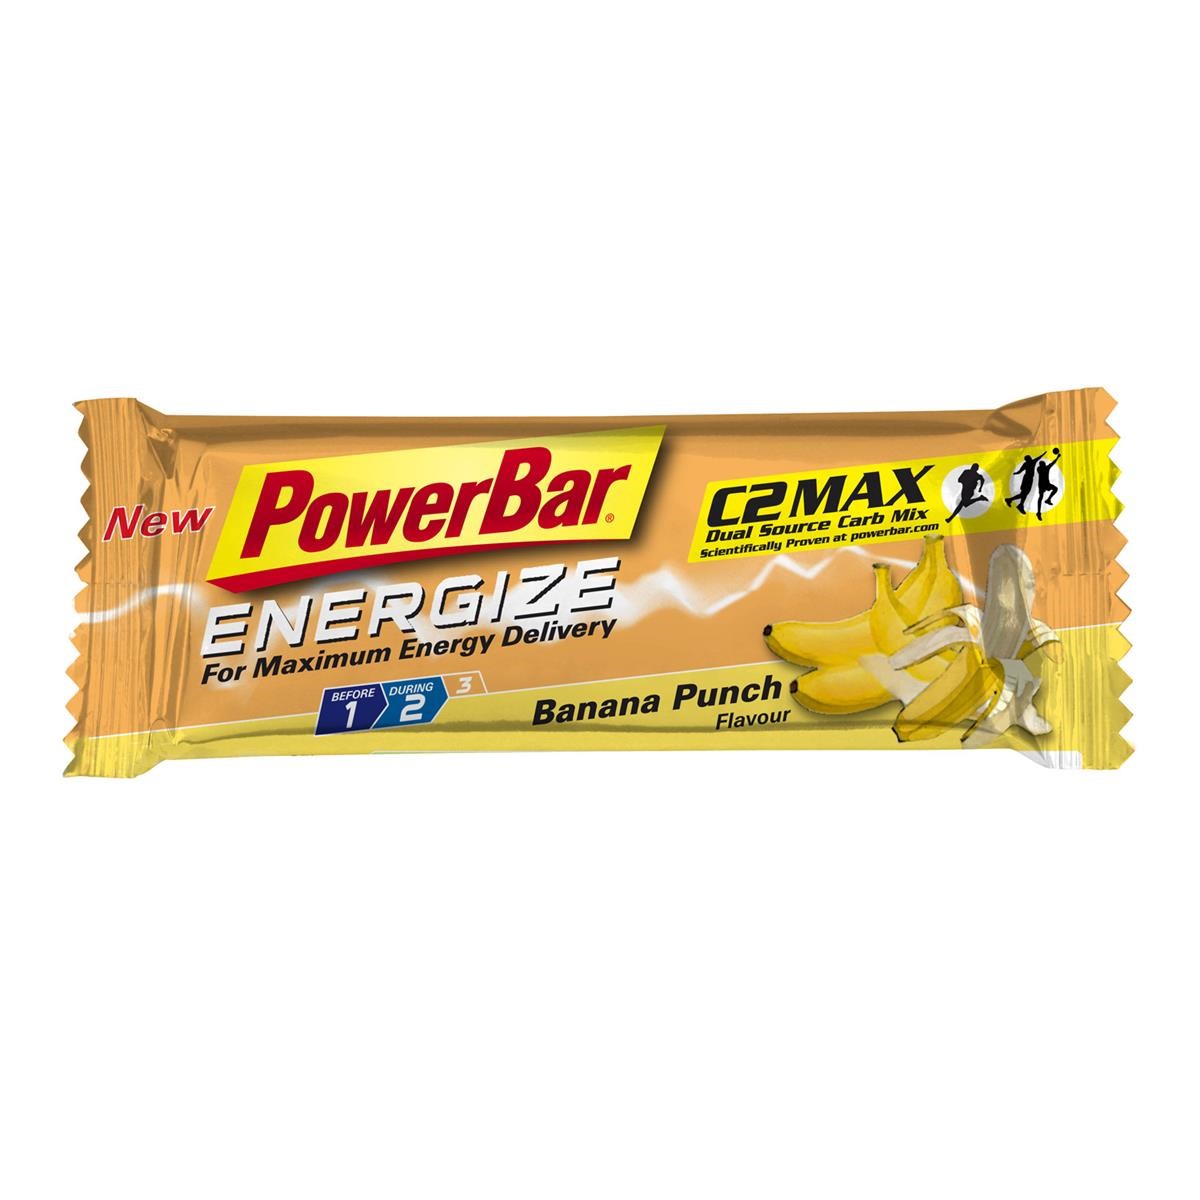 Lebensmittel/Fanartikel/Medien-Essen & Getränke - PowerBar Energize Riegel Banana-Punch, 55g - Mind. haltbar bis 05/12